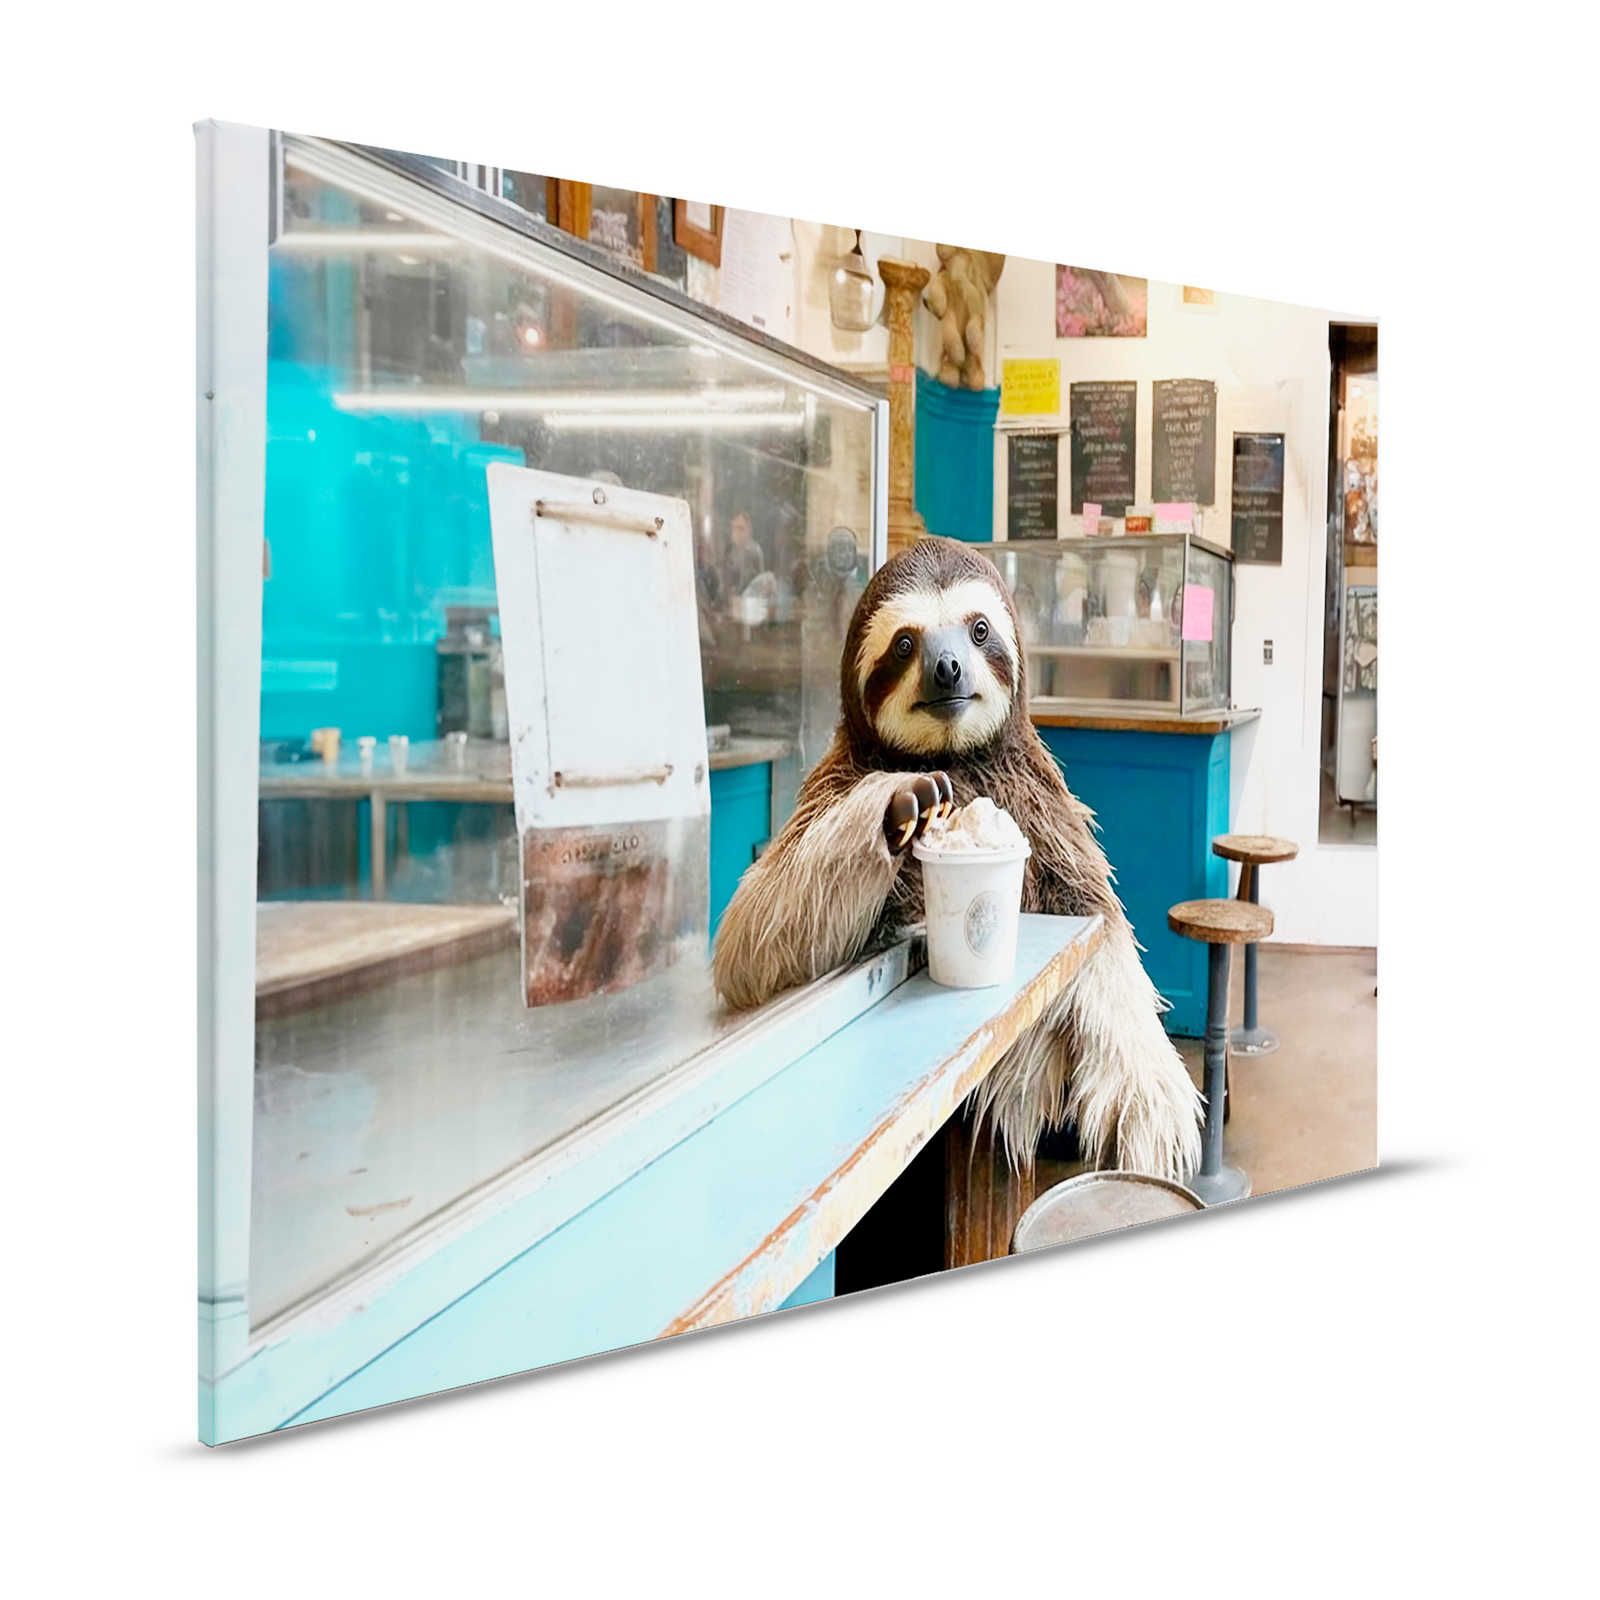 KI Canvas painting »icy sloth« - 120 cm x 80 cm
